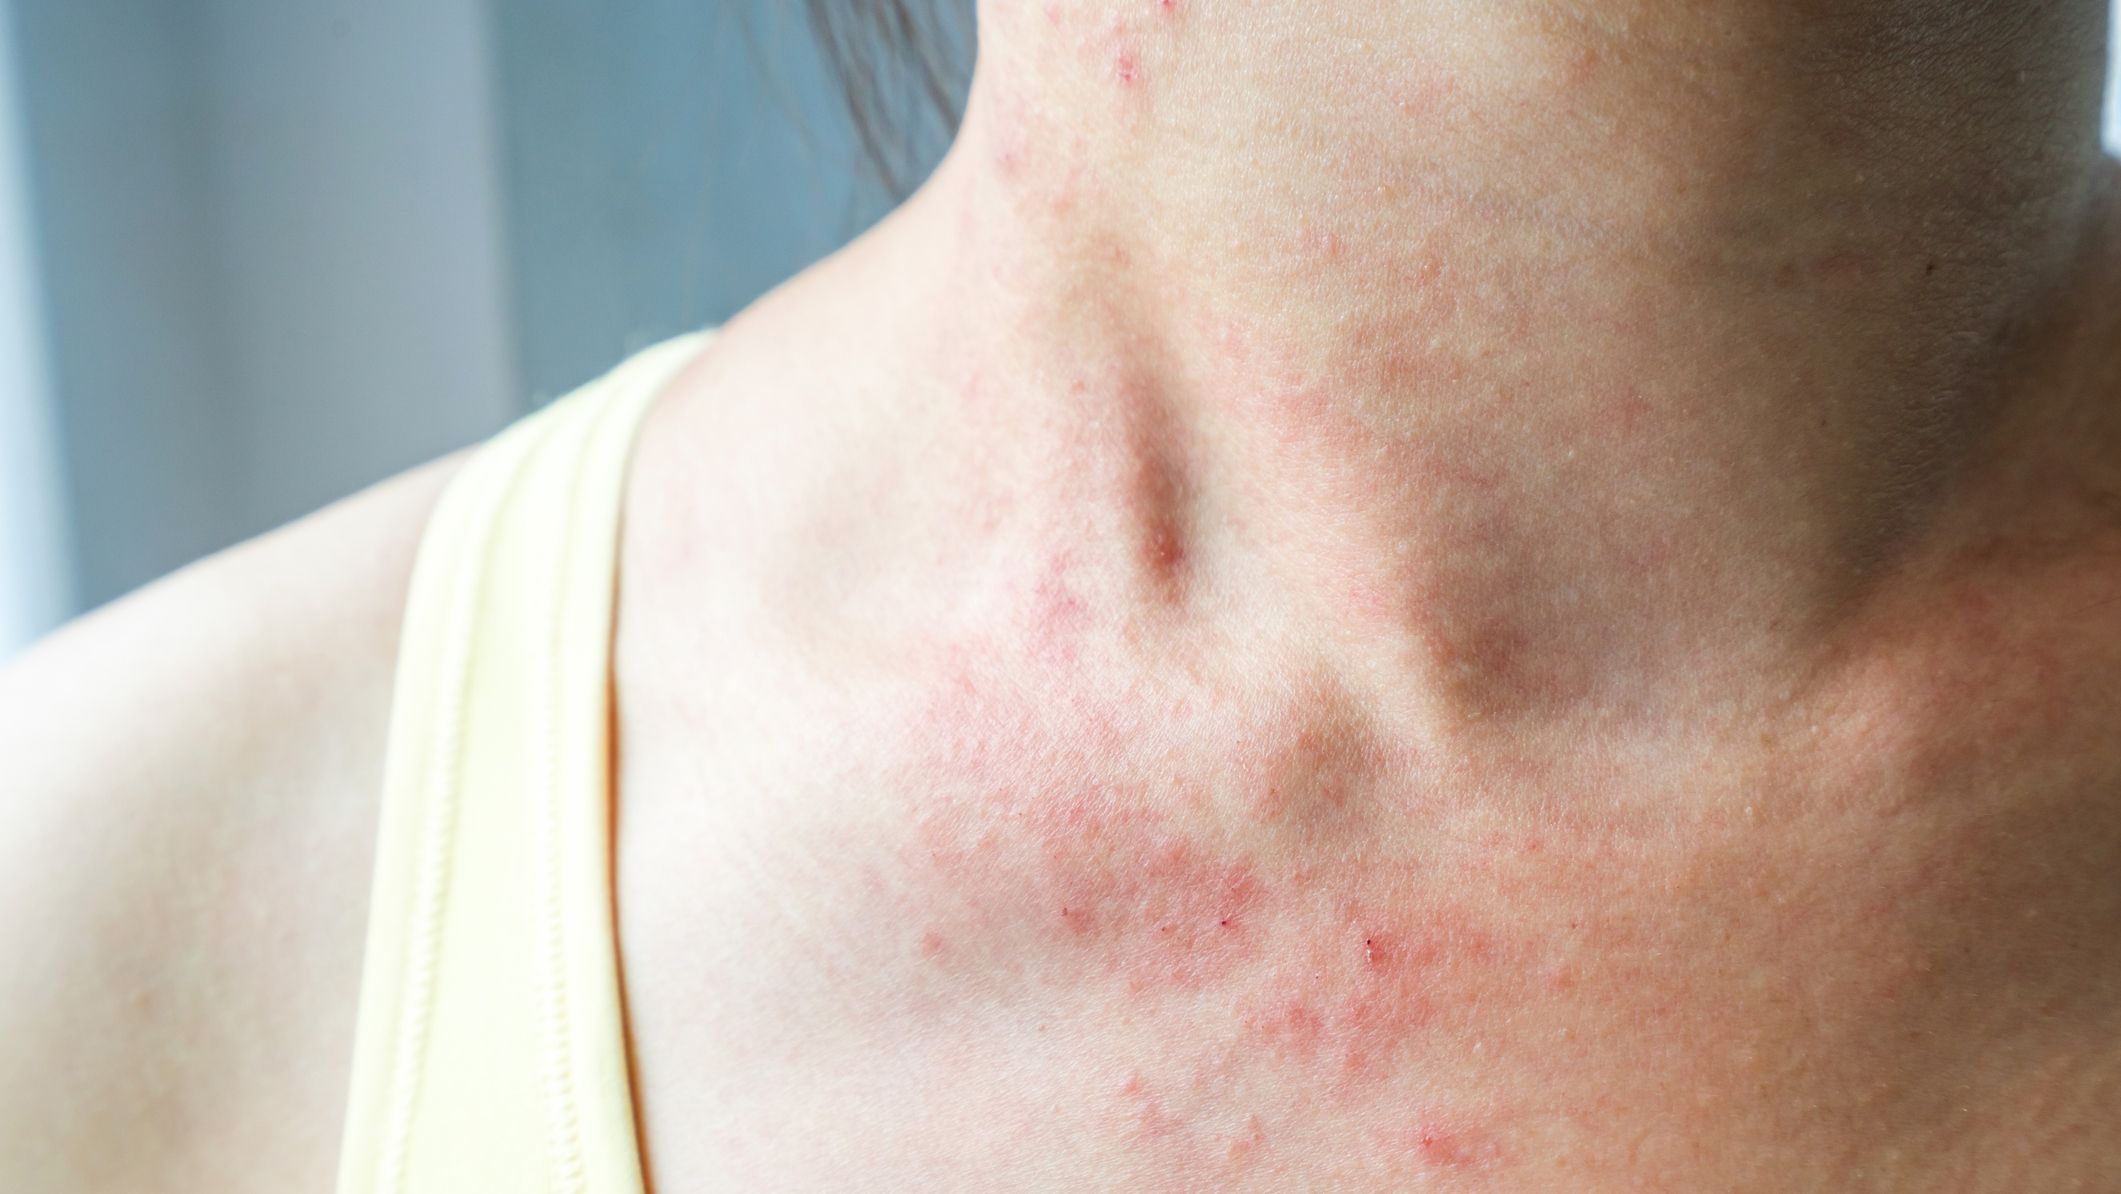 Why a Skin Rash May Be a Coronavirus Symptom, According to Doctors